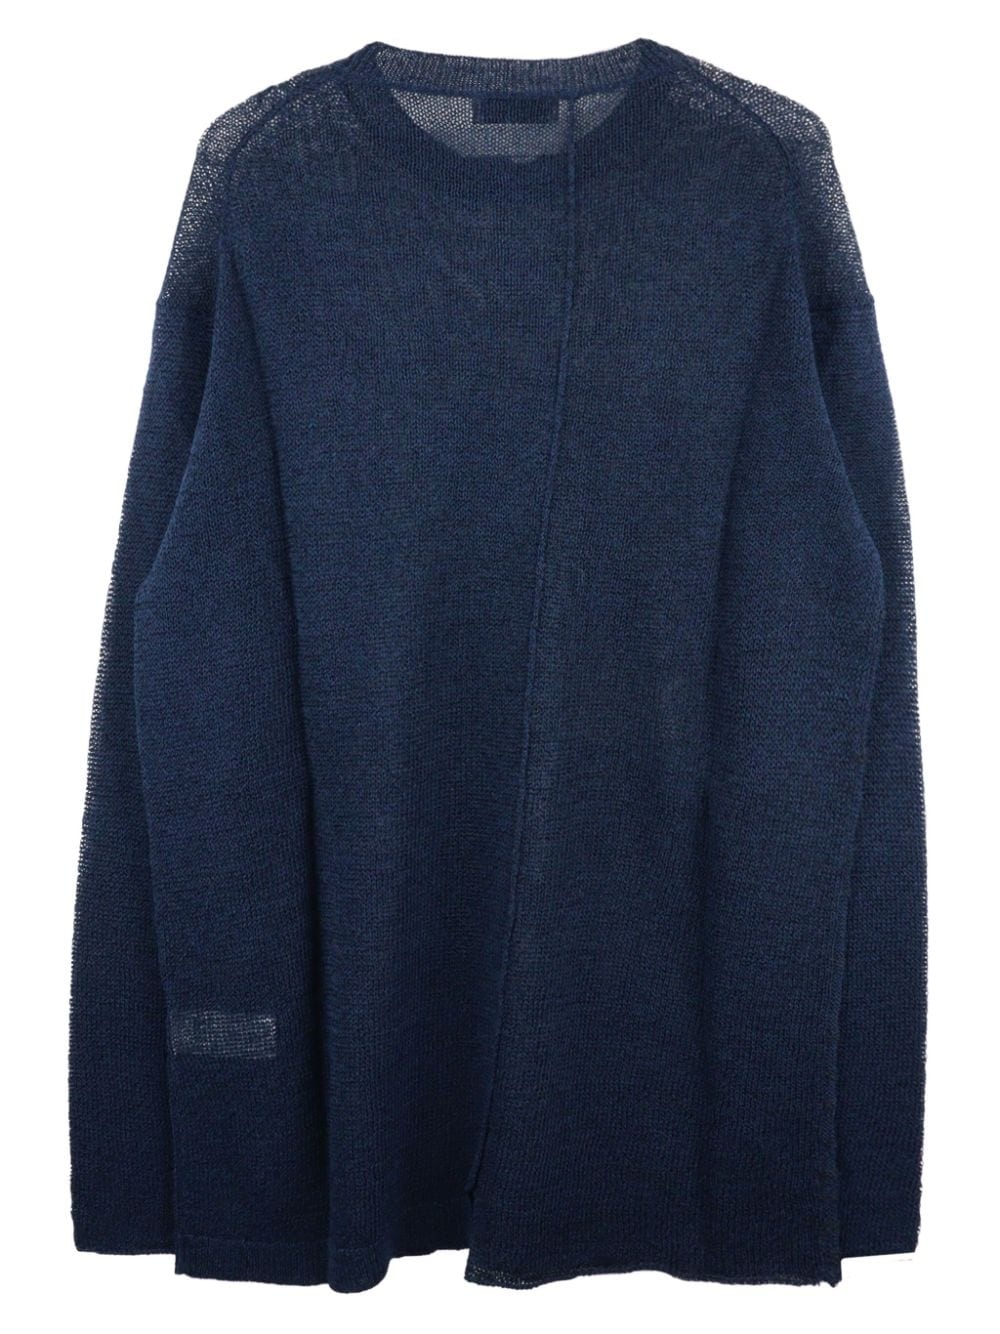 stitch-detail fine-knit jumper - 2